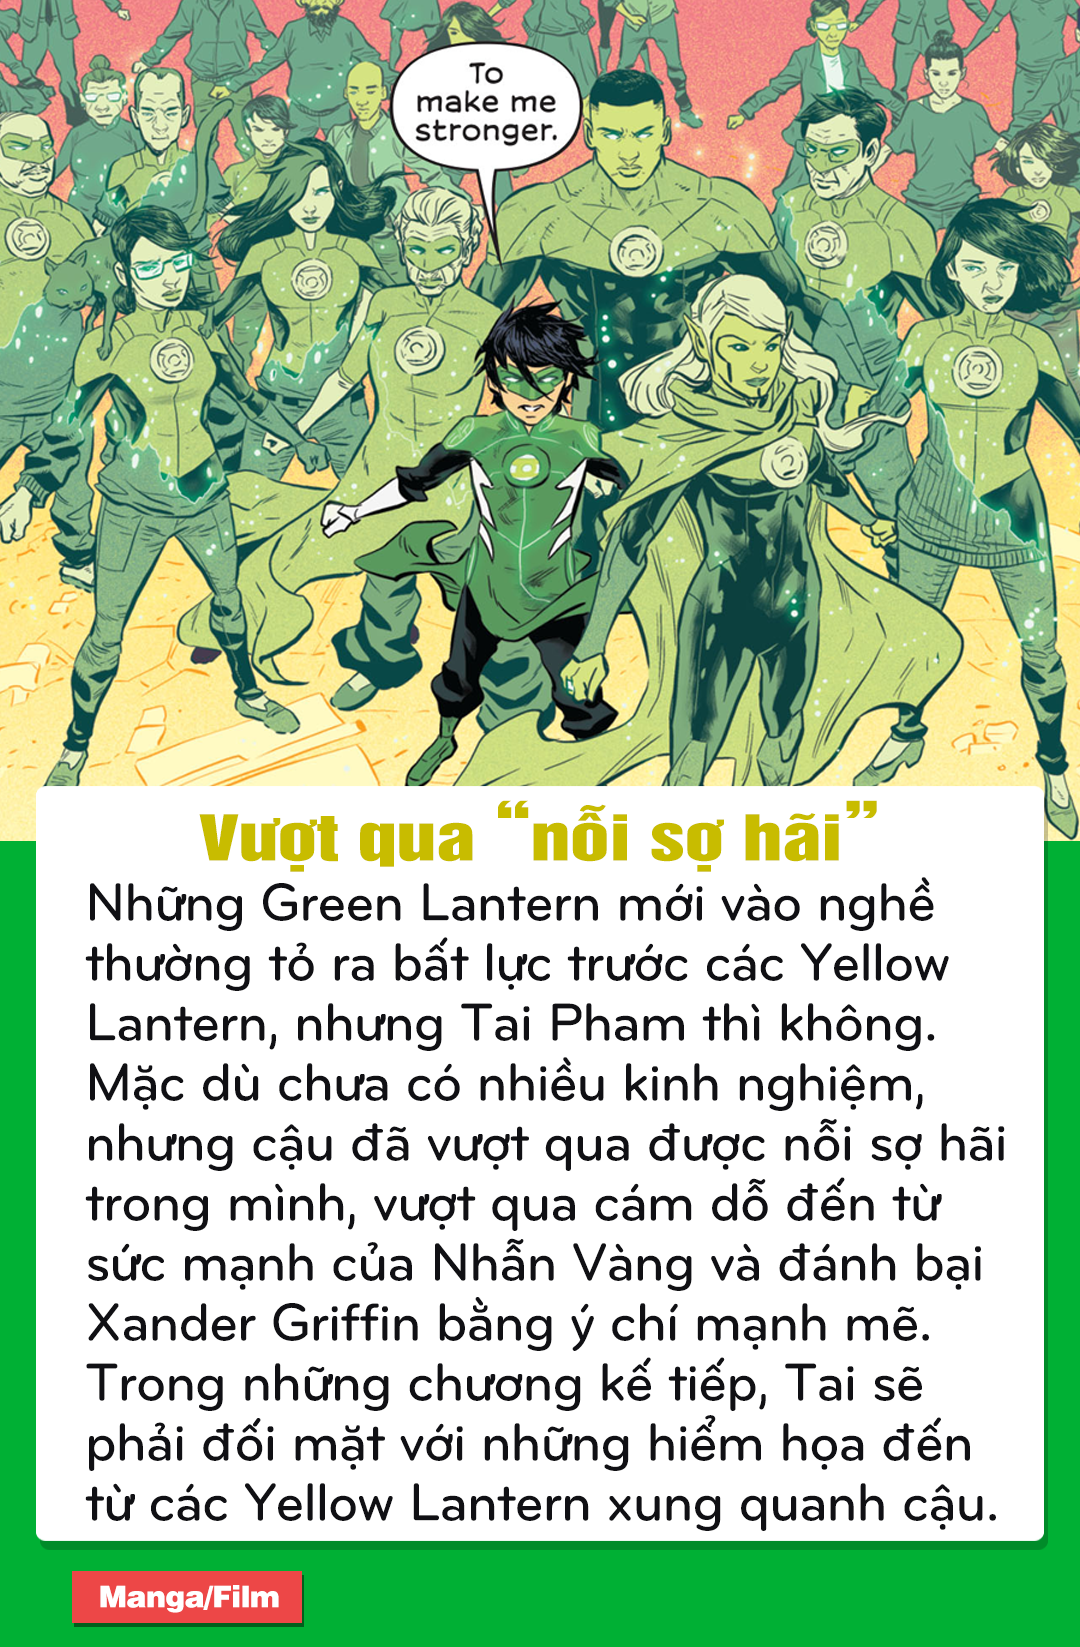 DC Comics: Điểm lại những chi tiết thú vị trong bộ truyện về siêu anh hùng Green Lantern người Việt - Tài Phạm - Ảnh 12.